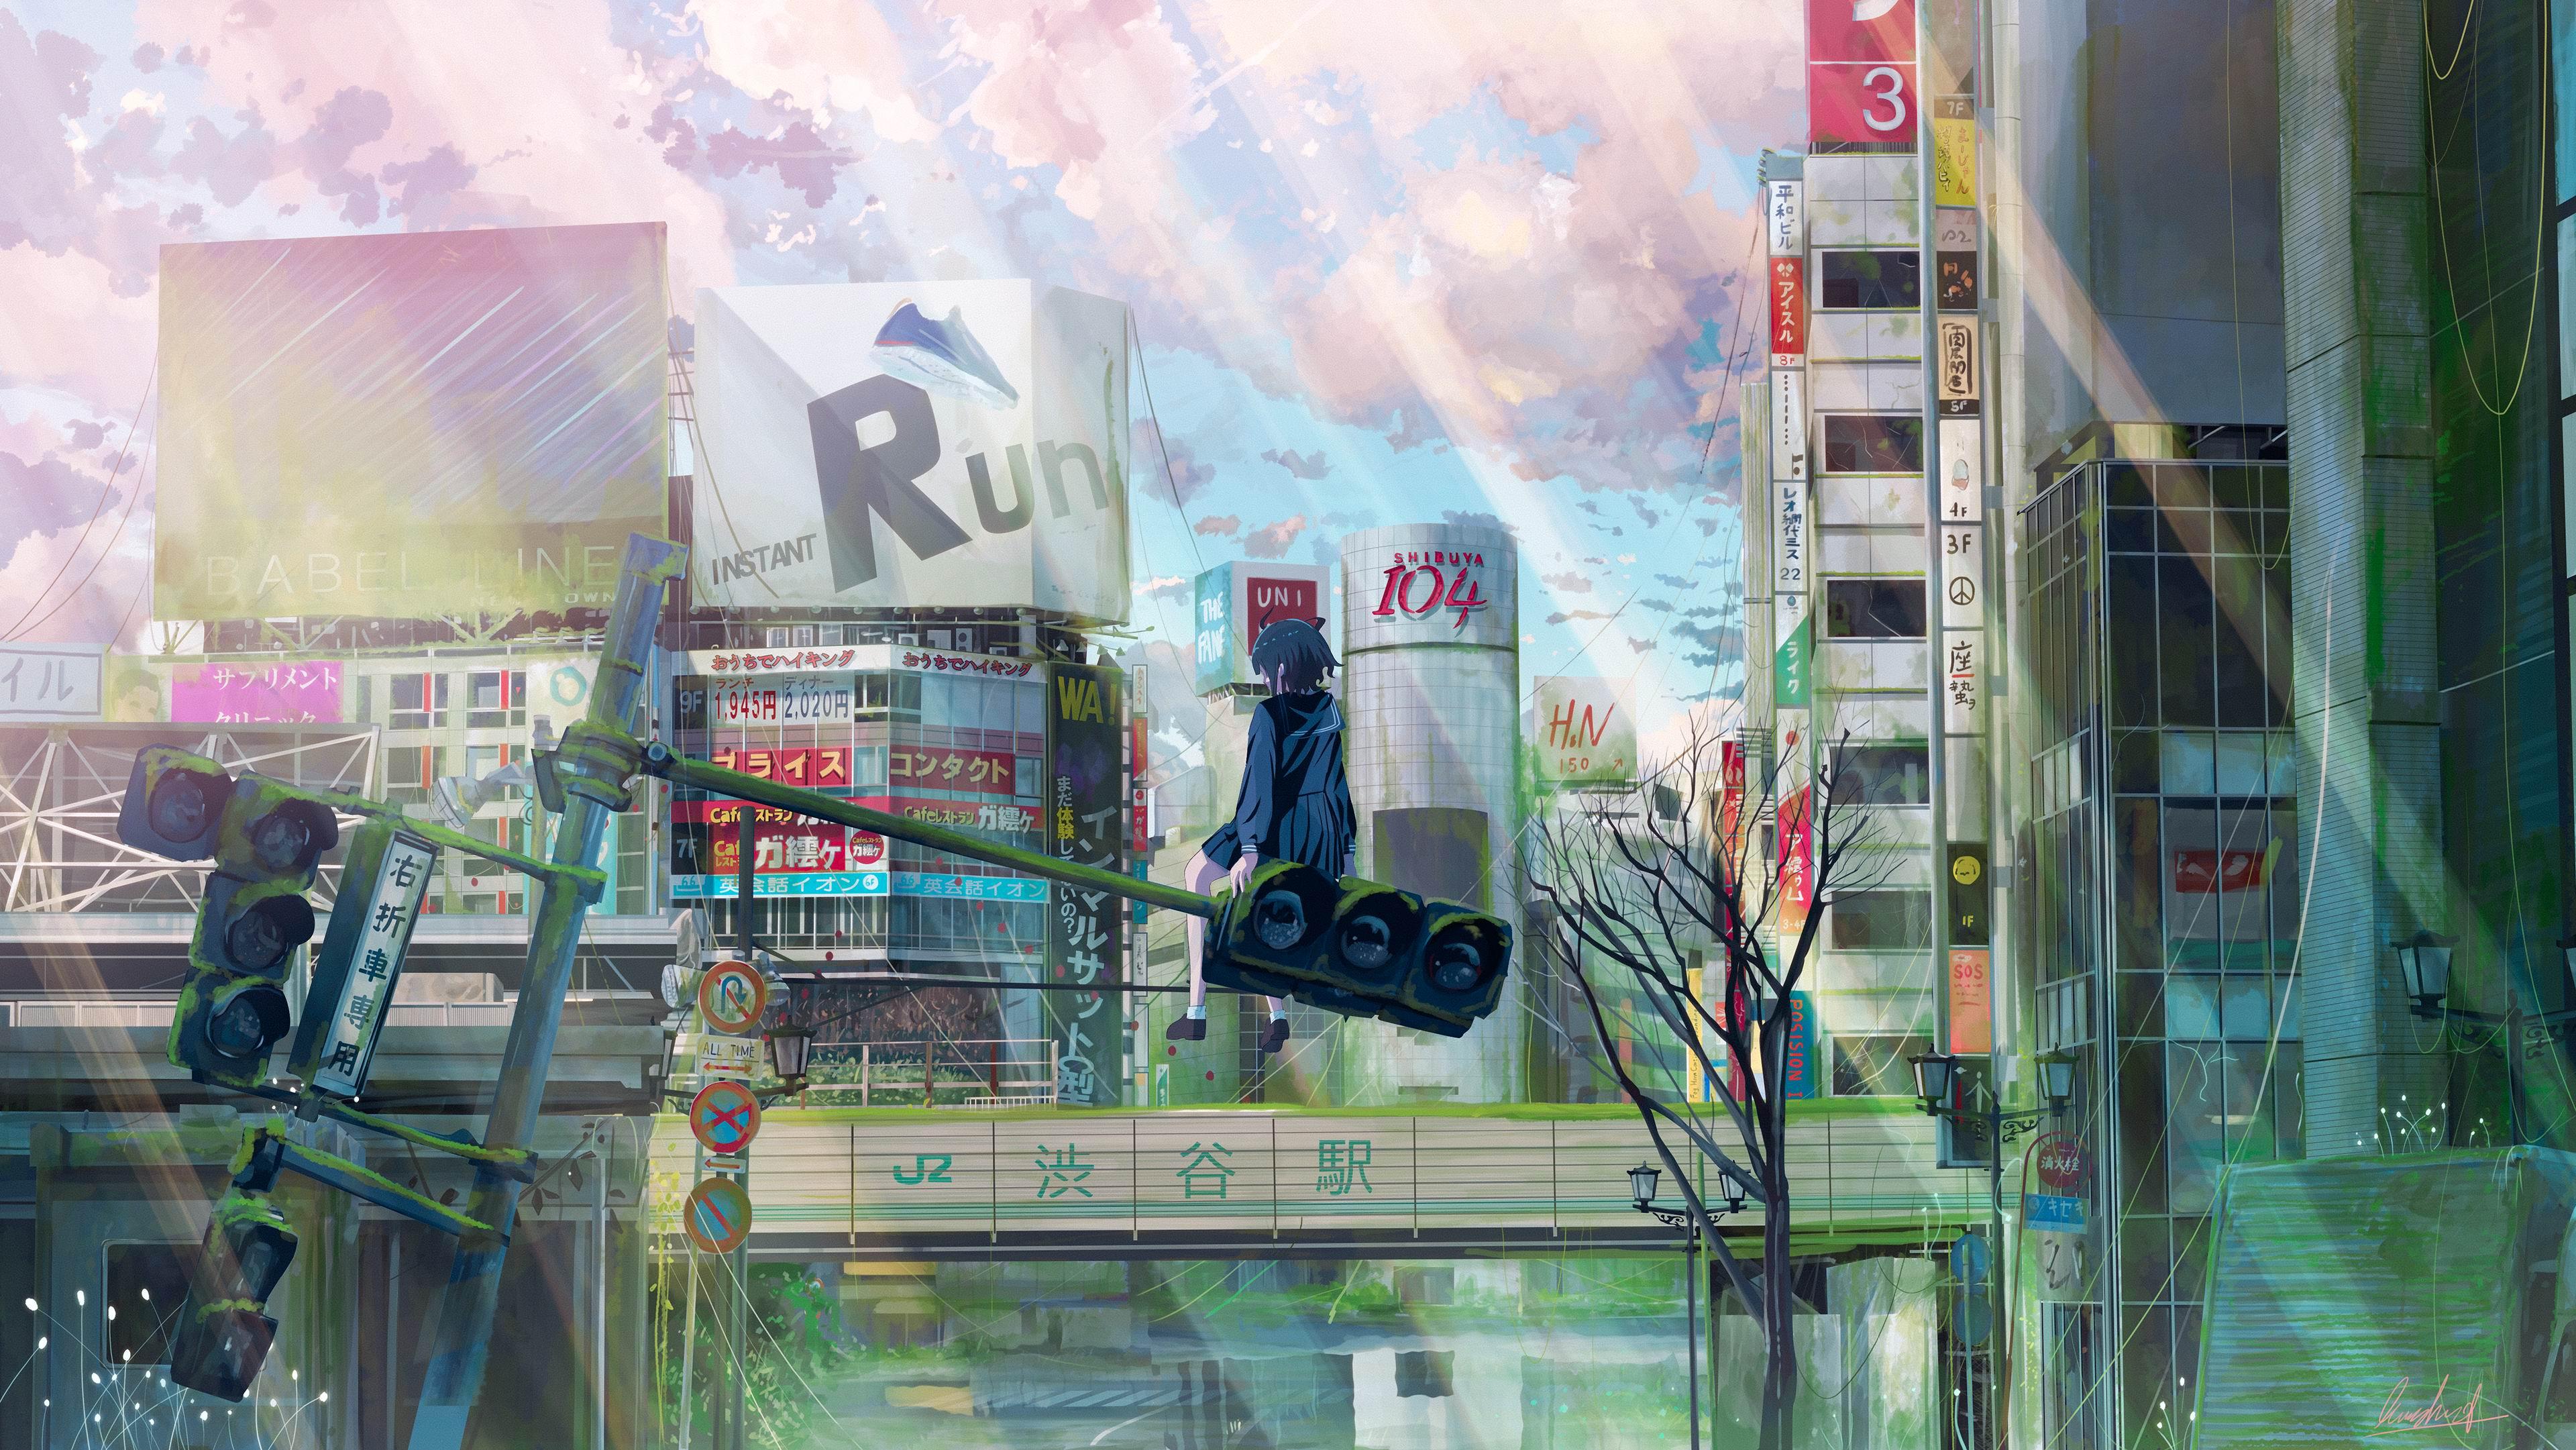 找一张动漫风壁纸是涩谷站前面有一个女孩坐在红绿灯上面就她一个人哪